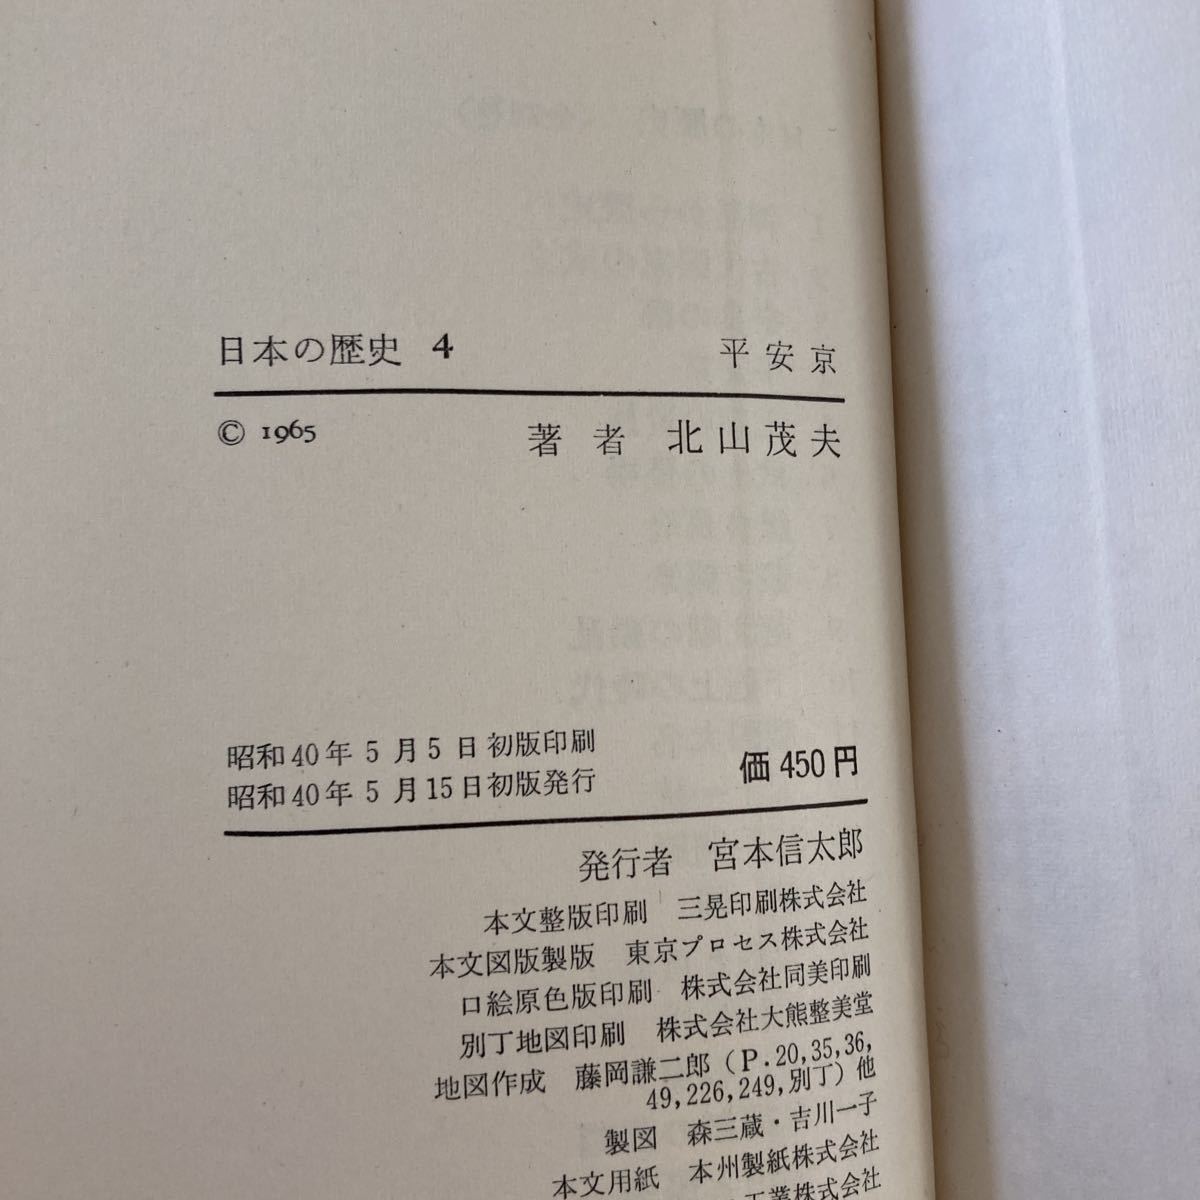  центр . теория фирма создание 80 anniversary commemoration японская история Inoue свет . почти первая версия 1-26 все тома в комплекте Showa старая книга .. товар материалы 